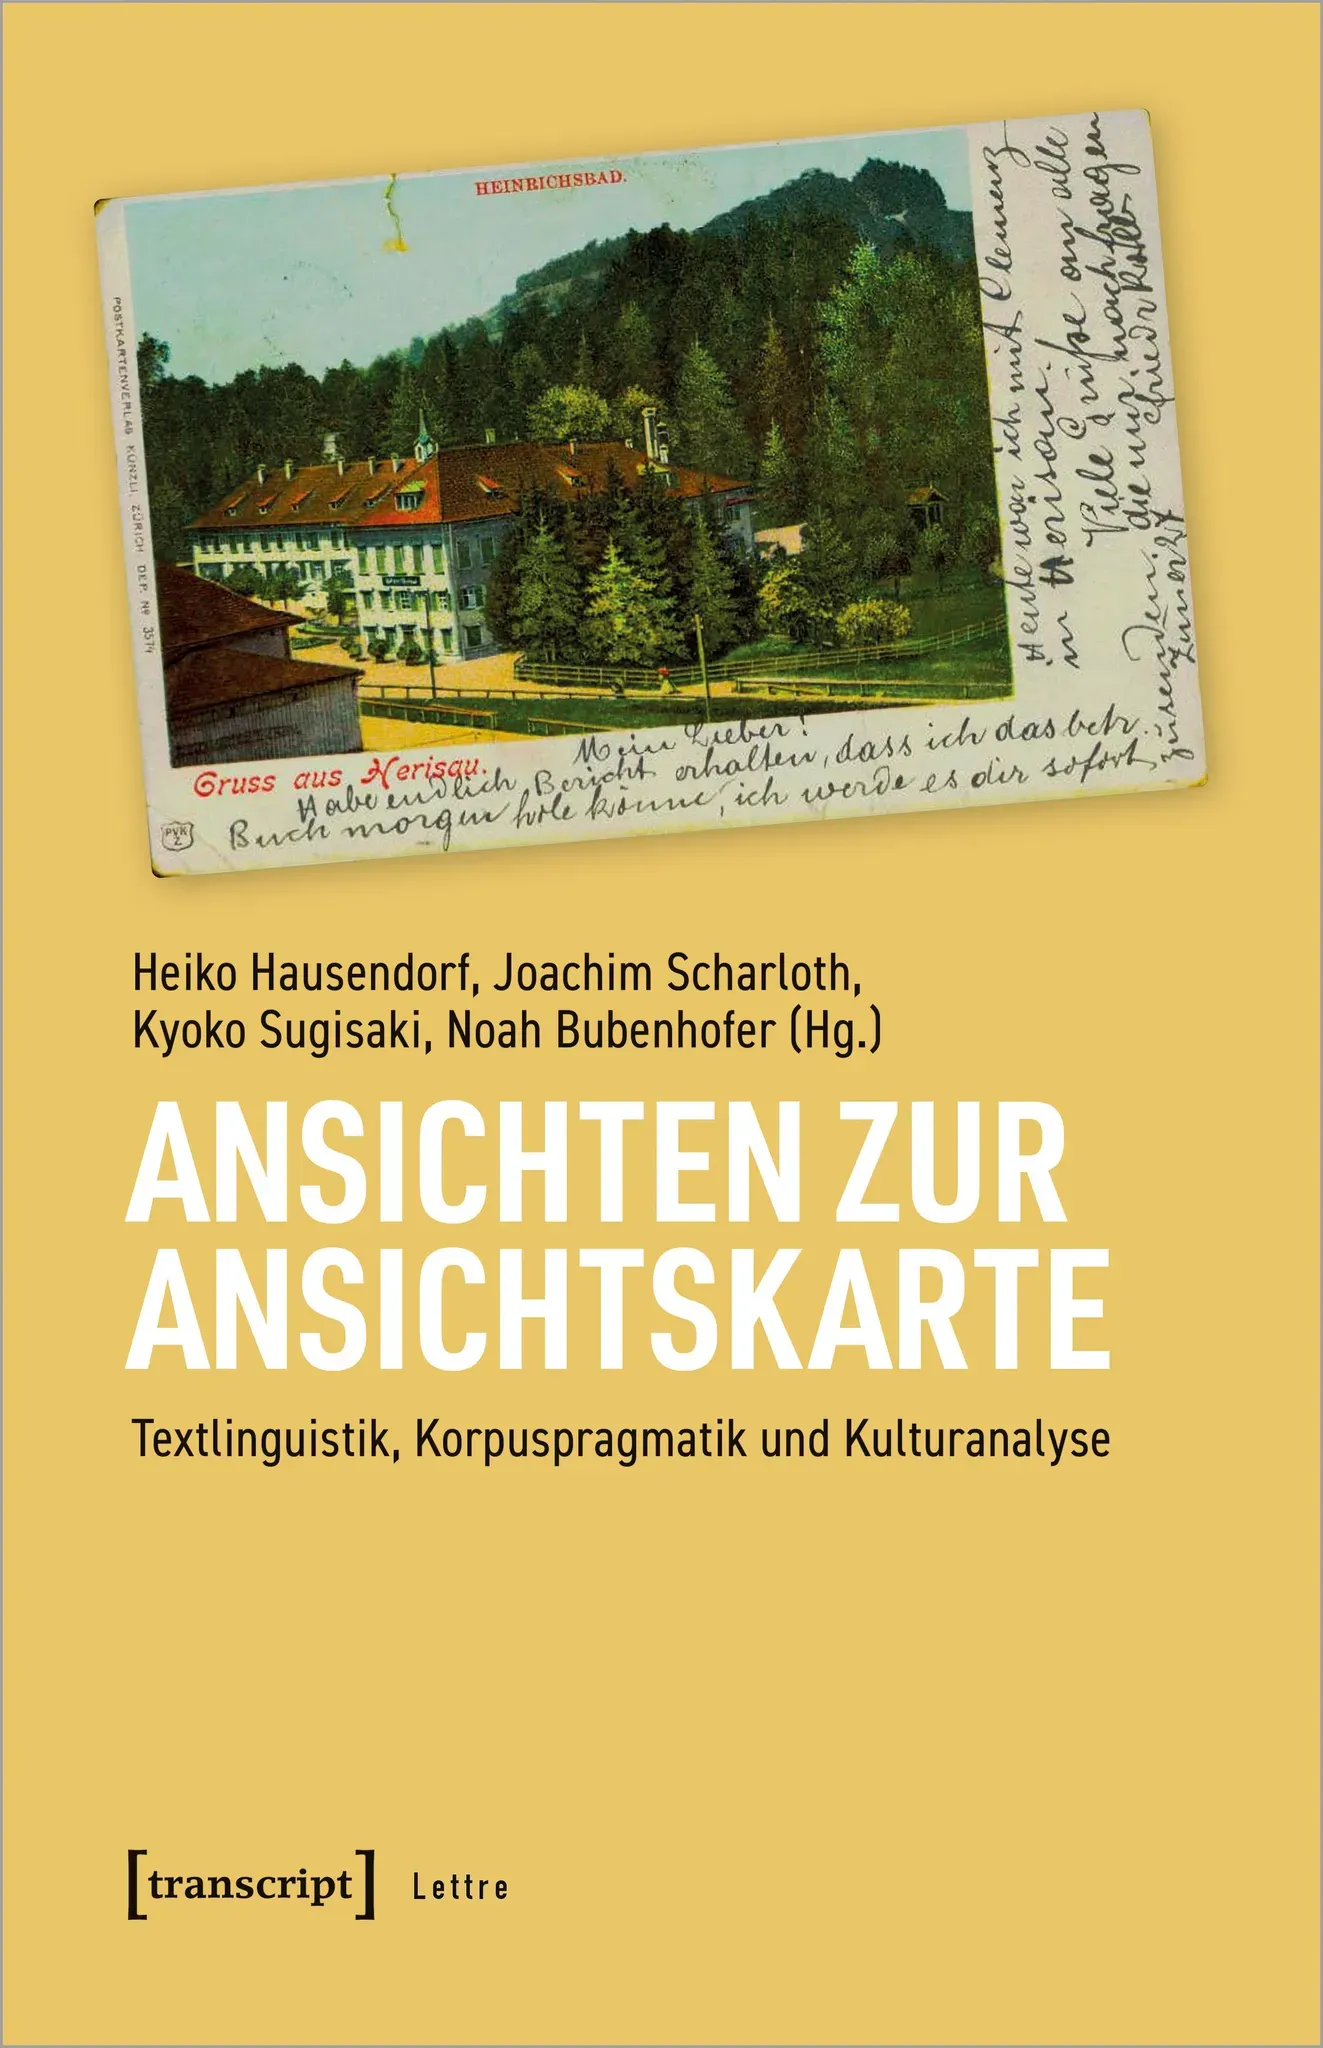 Ansichten zur Ansichtskarte, Fachbücher von Heiko Hausendorf, Joachim Scharloth, Noah Bubenhofer